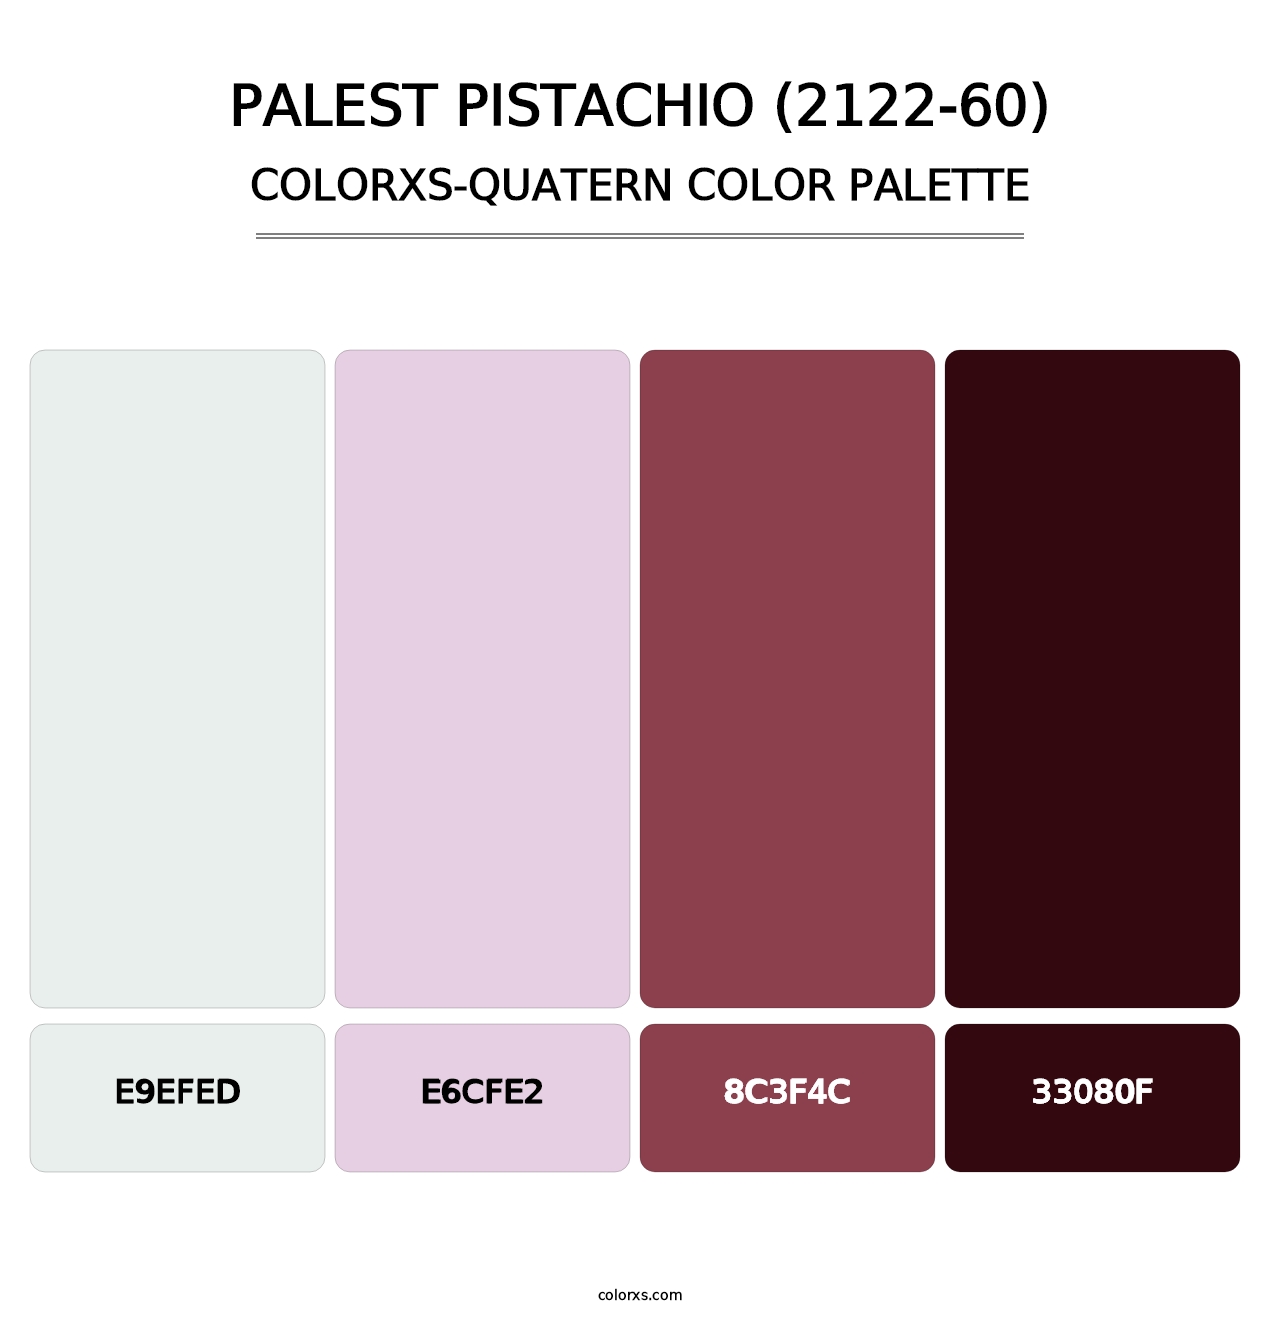 Palest Pistachio (2122-60) - Colorxs Quatern Palette